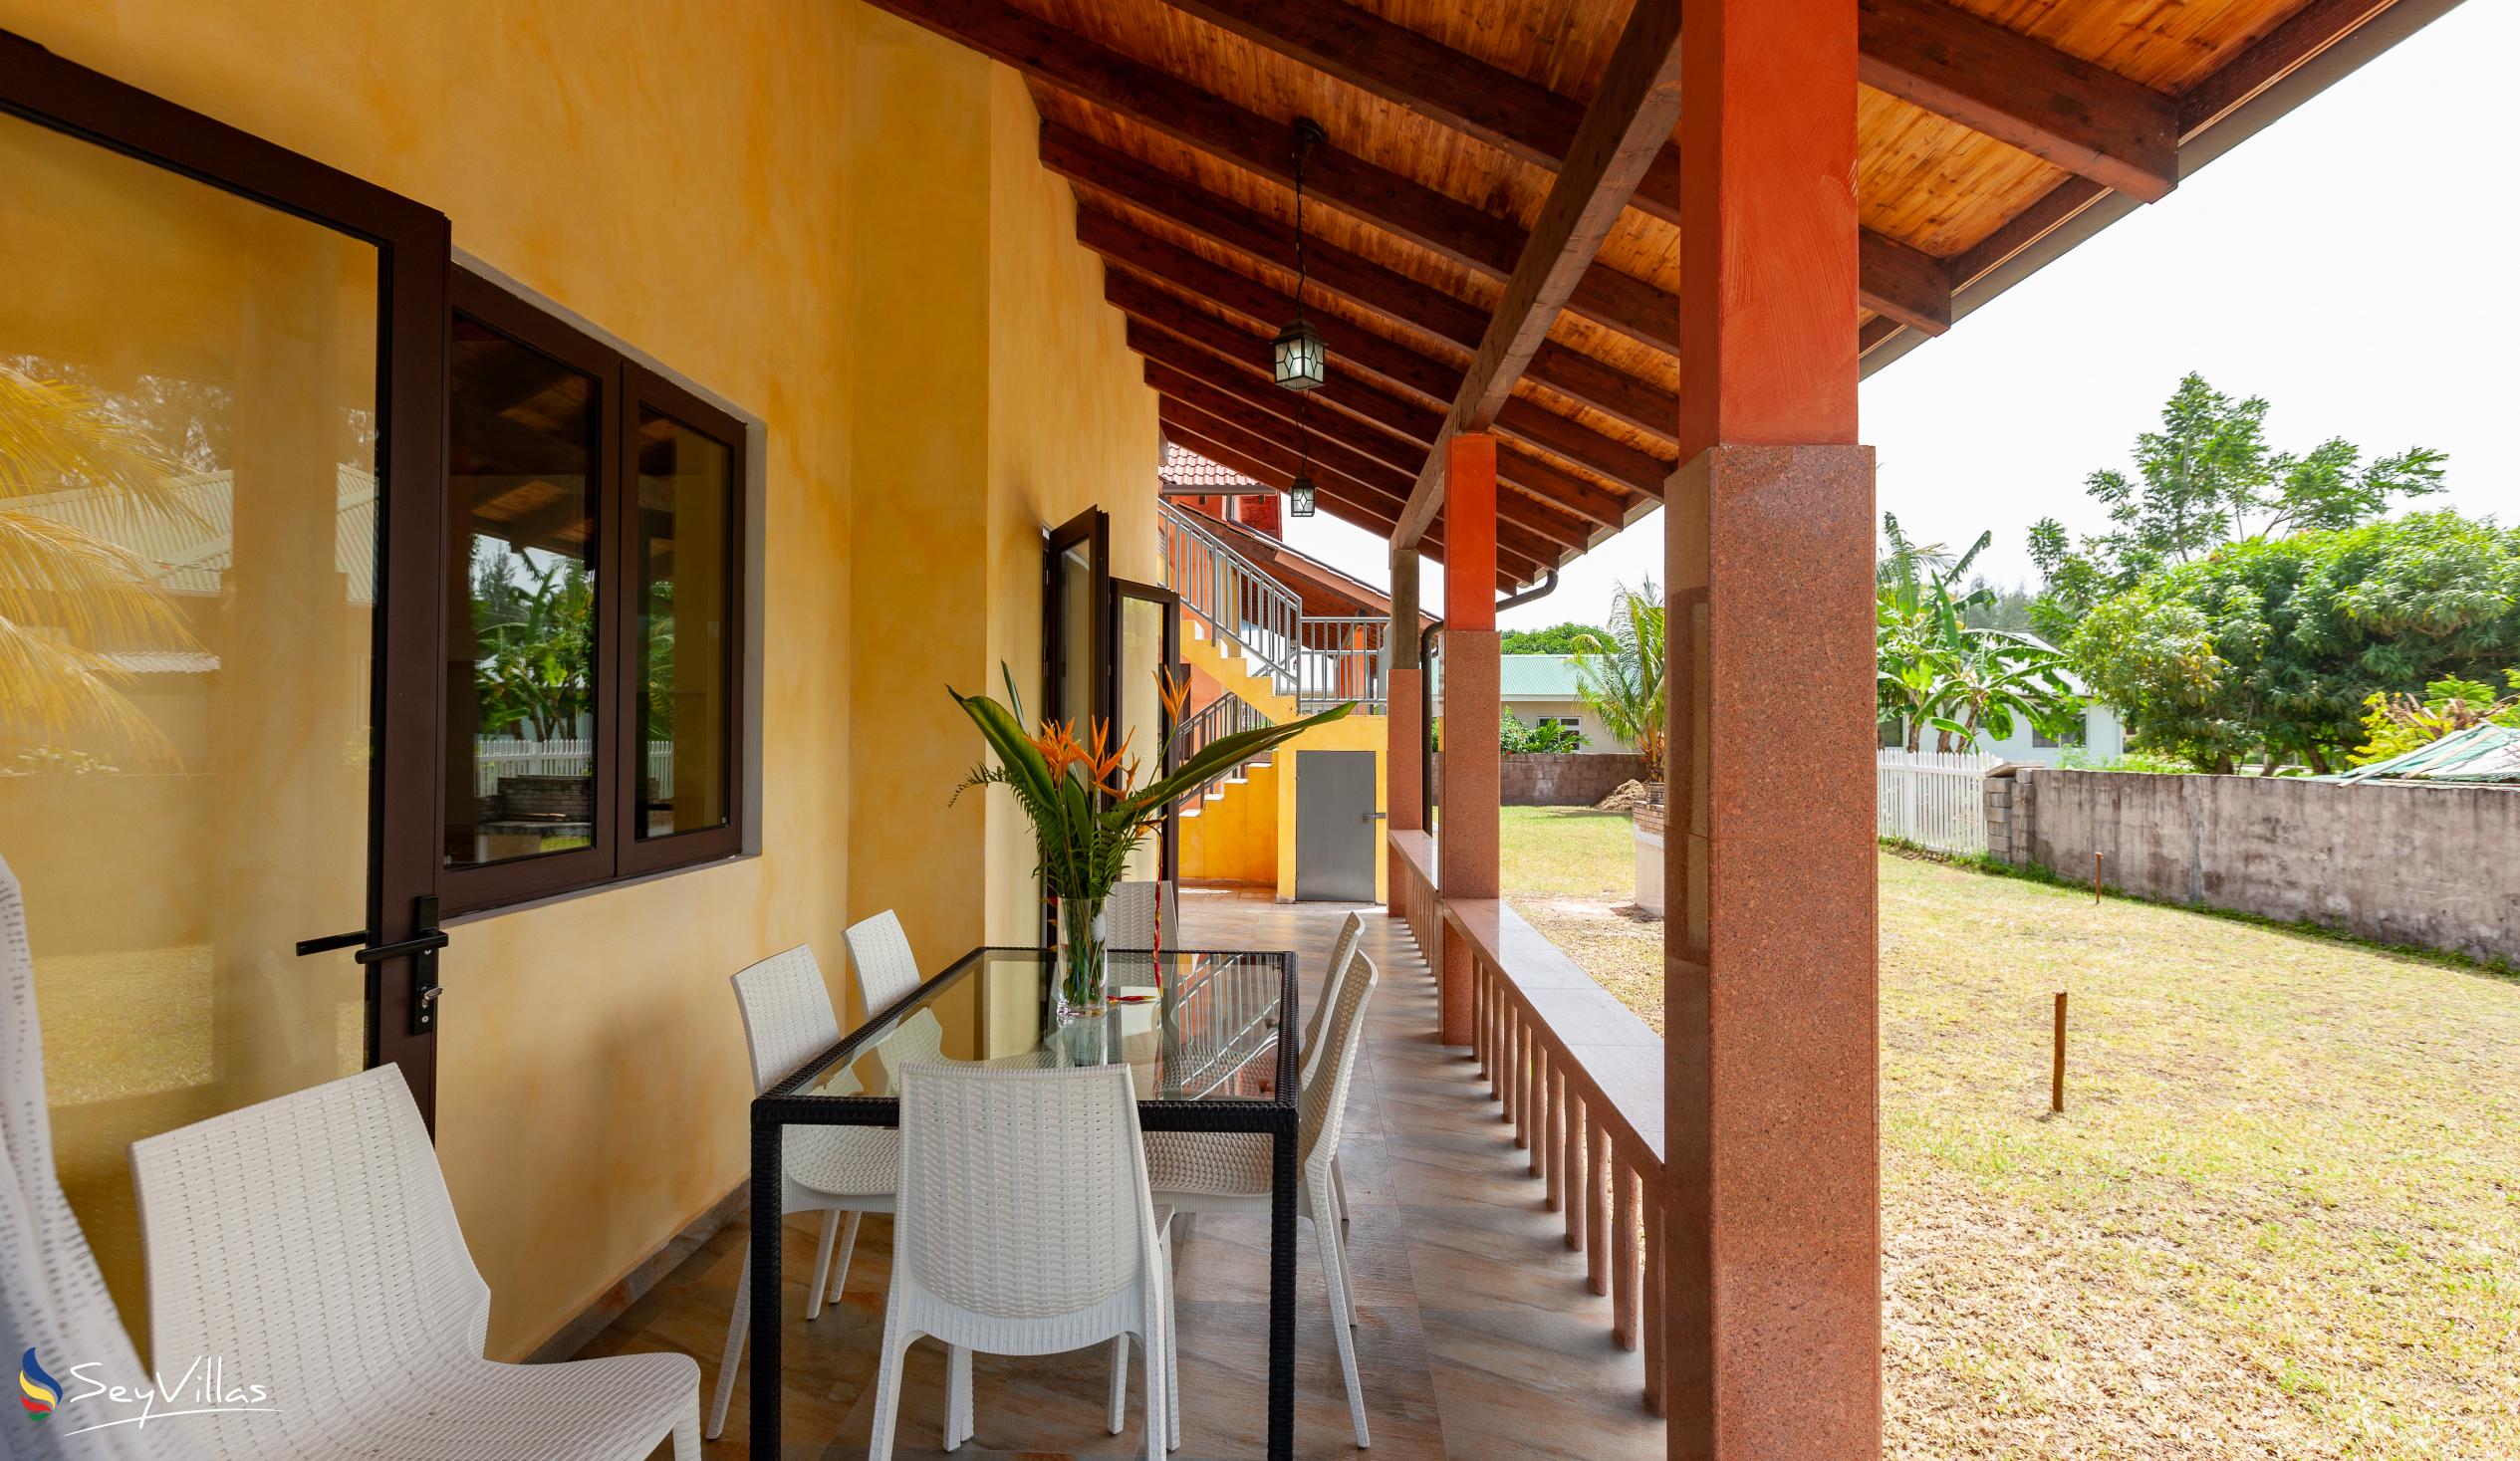 Foto 16: Villa Sole - Aussenbereich - Praslin (Seychellen)